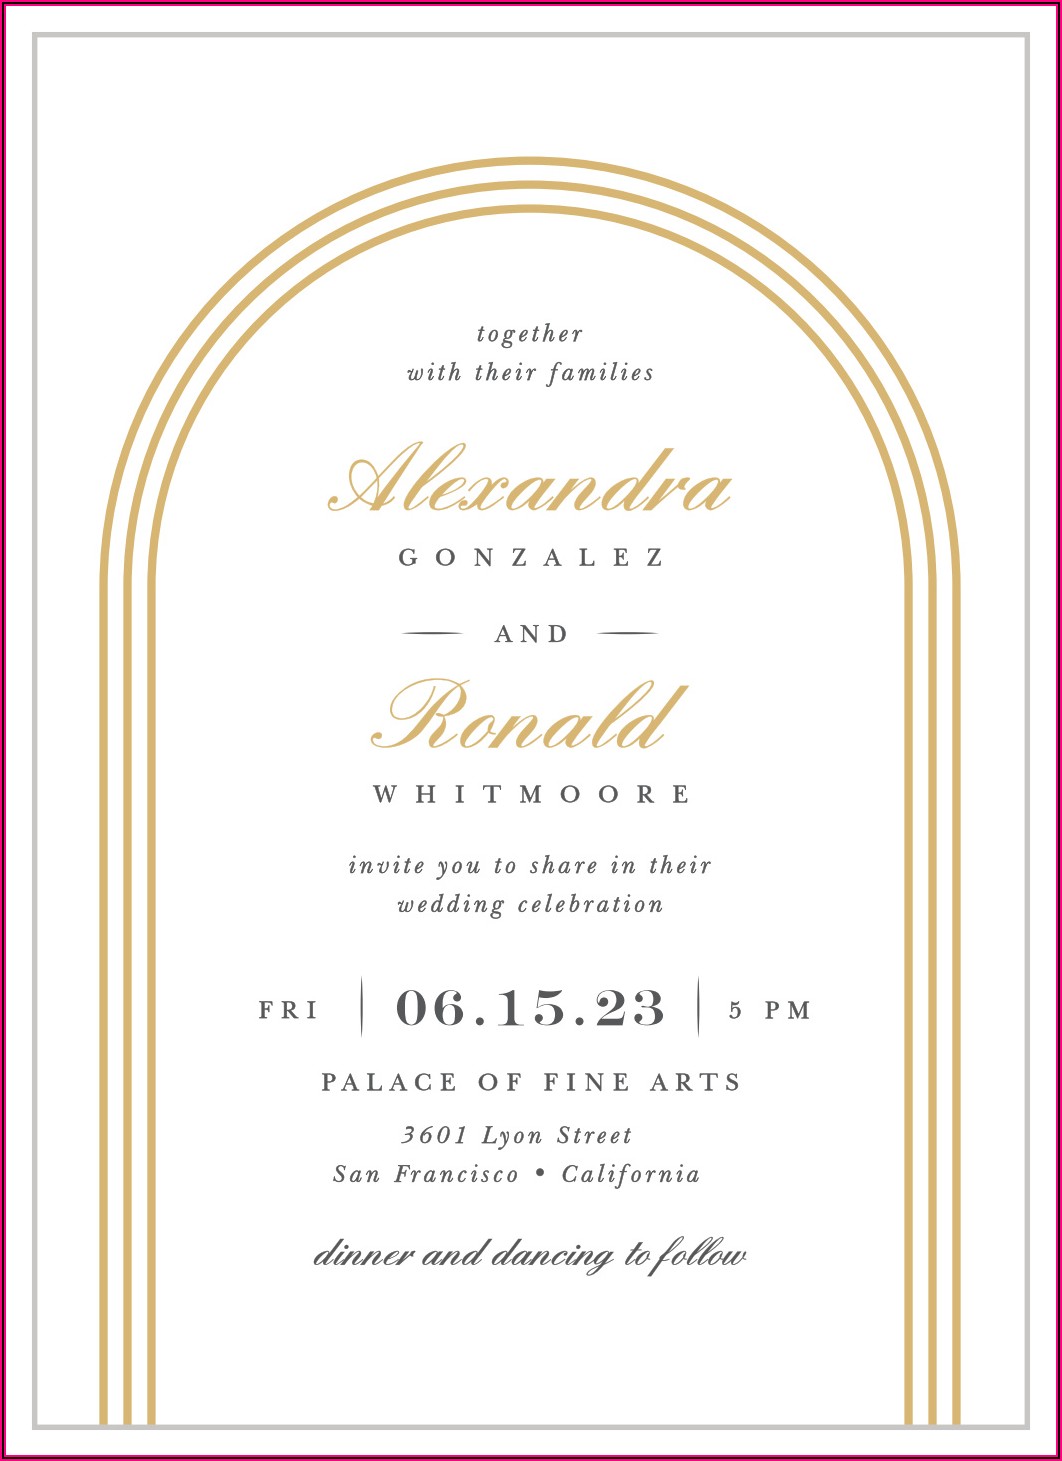 Simple Elegant Wedding Invitations